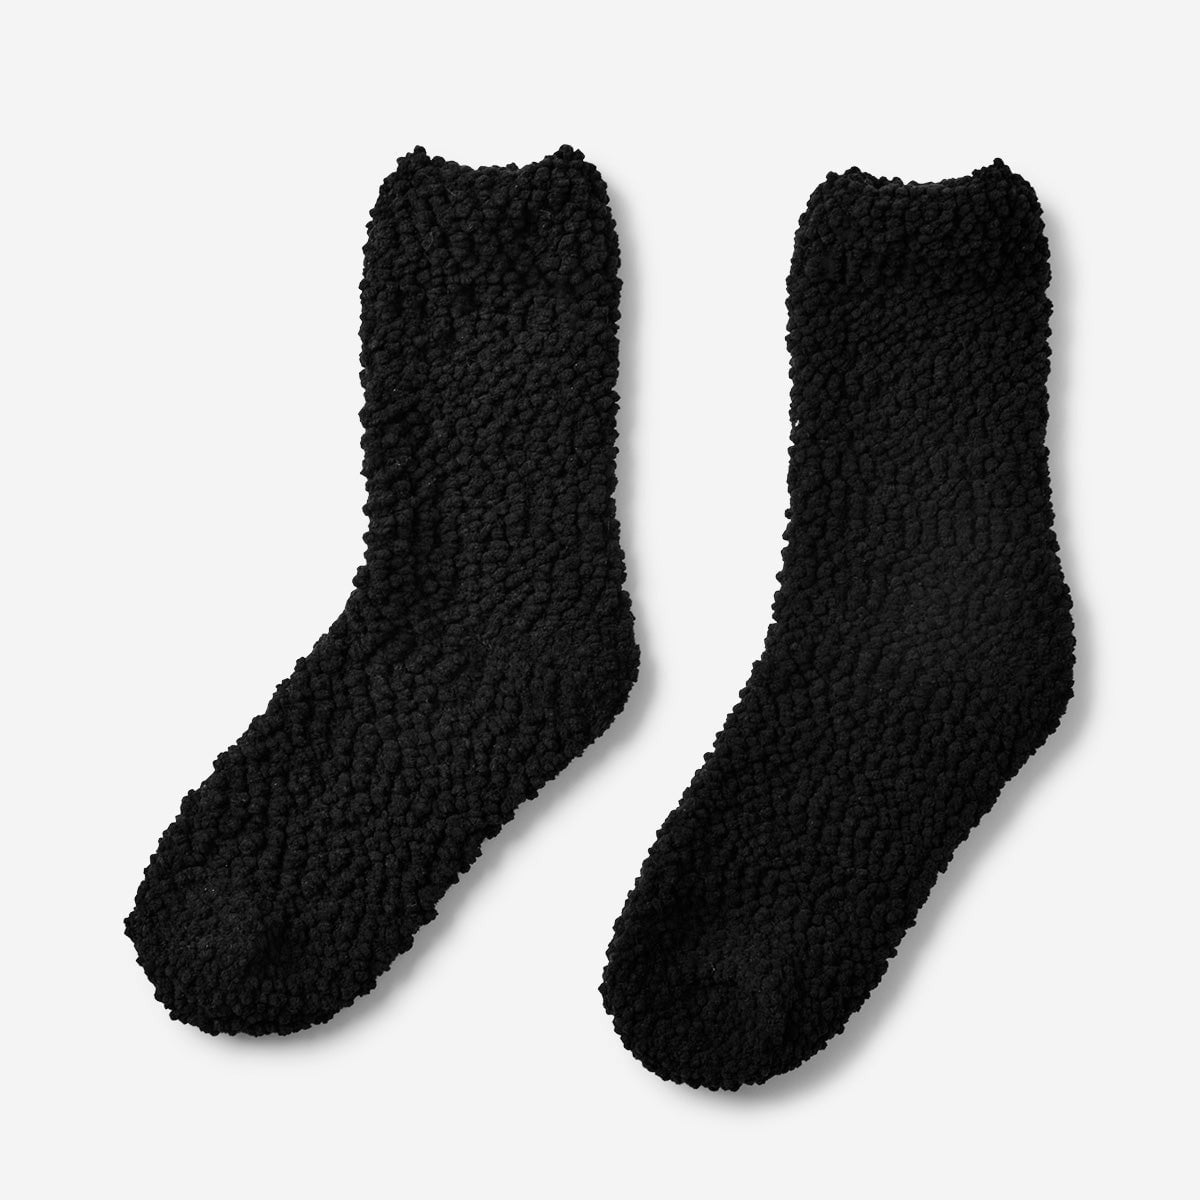 Comfy socks. Size 39-41 Textile Flying Tiger Copenhagen 